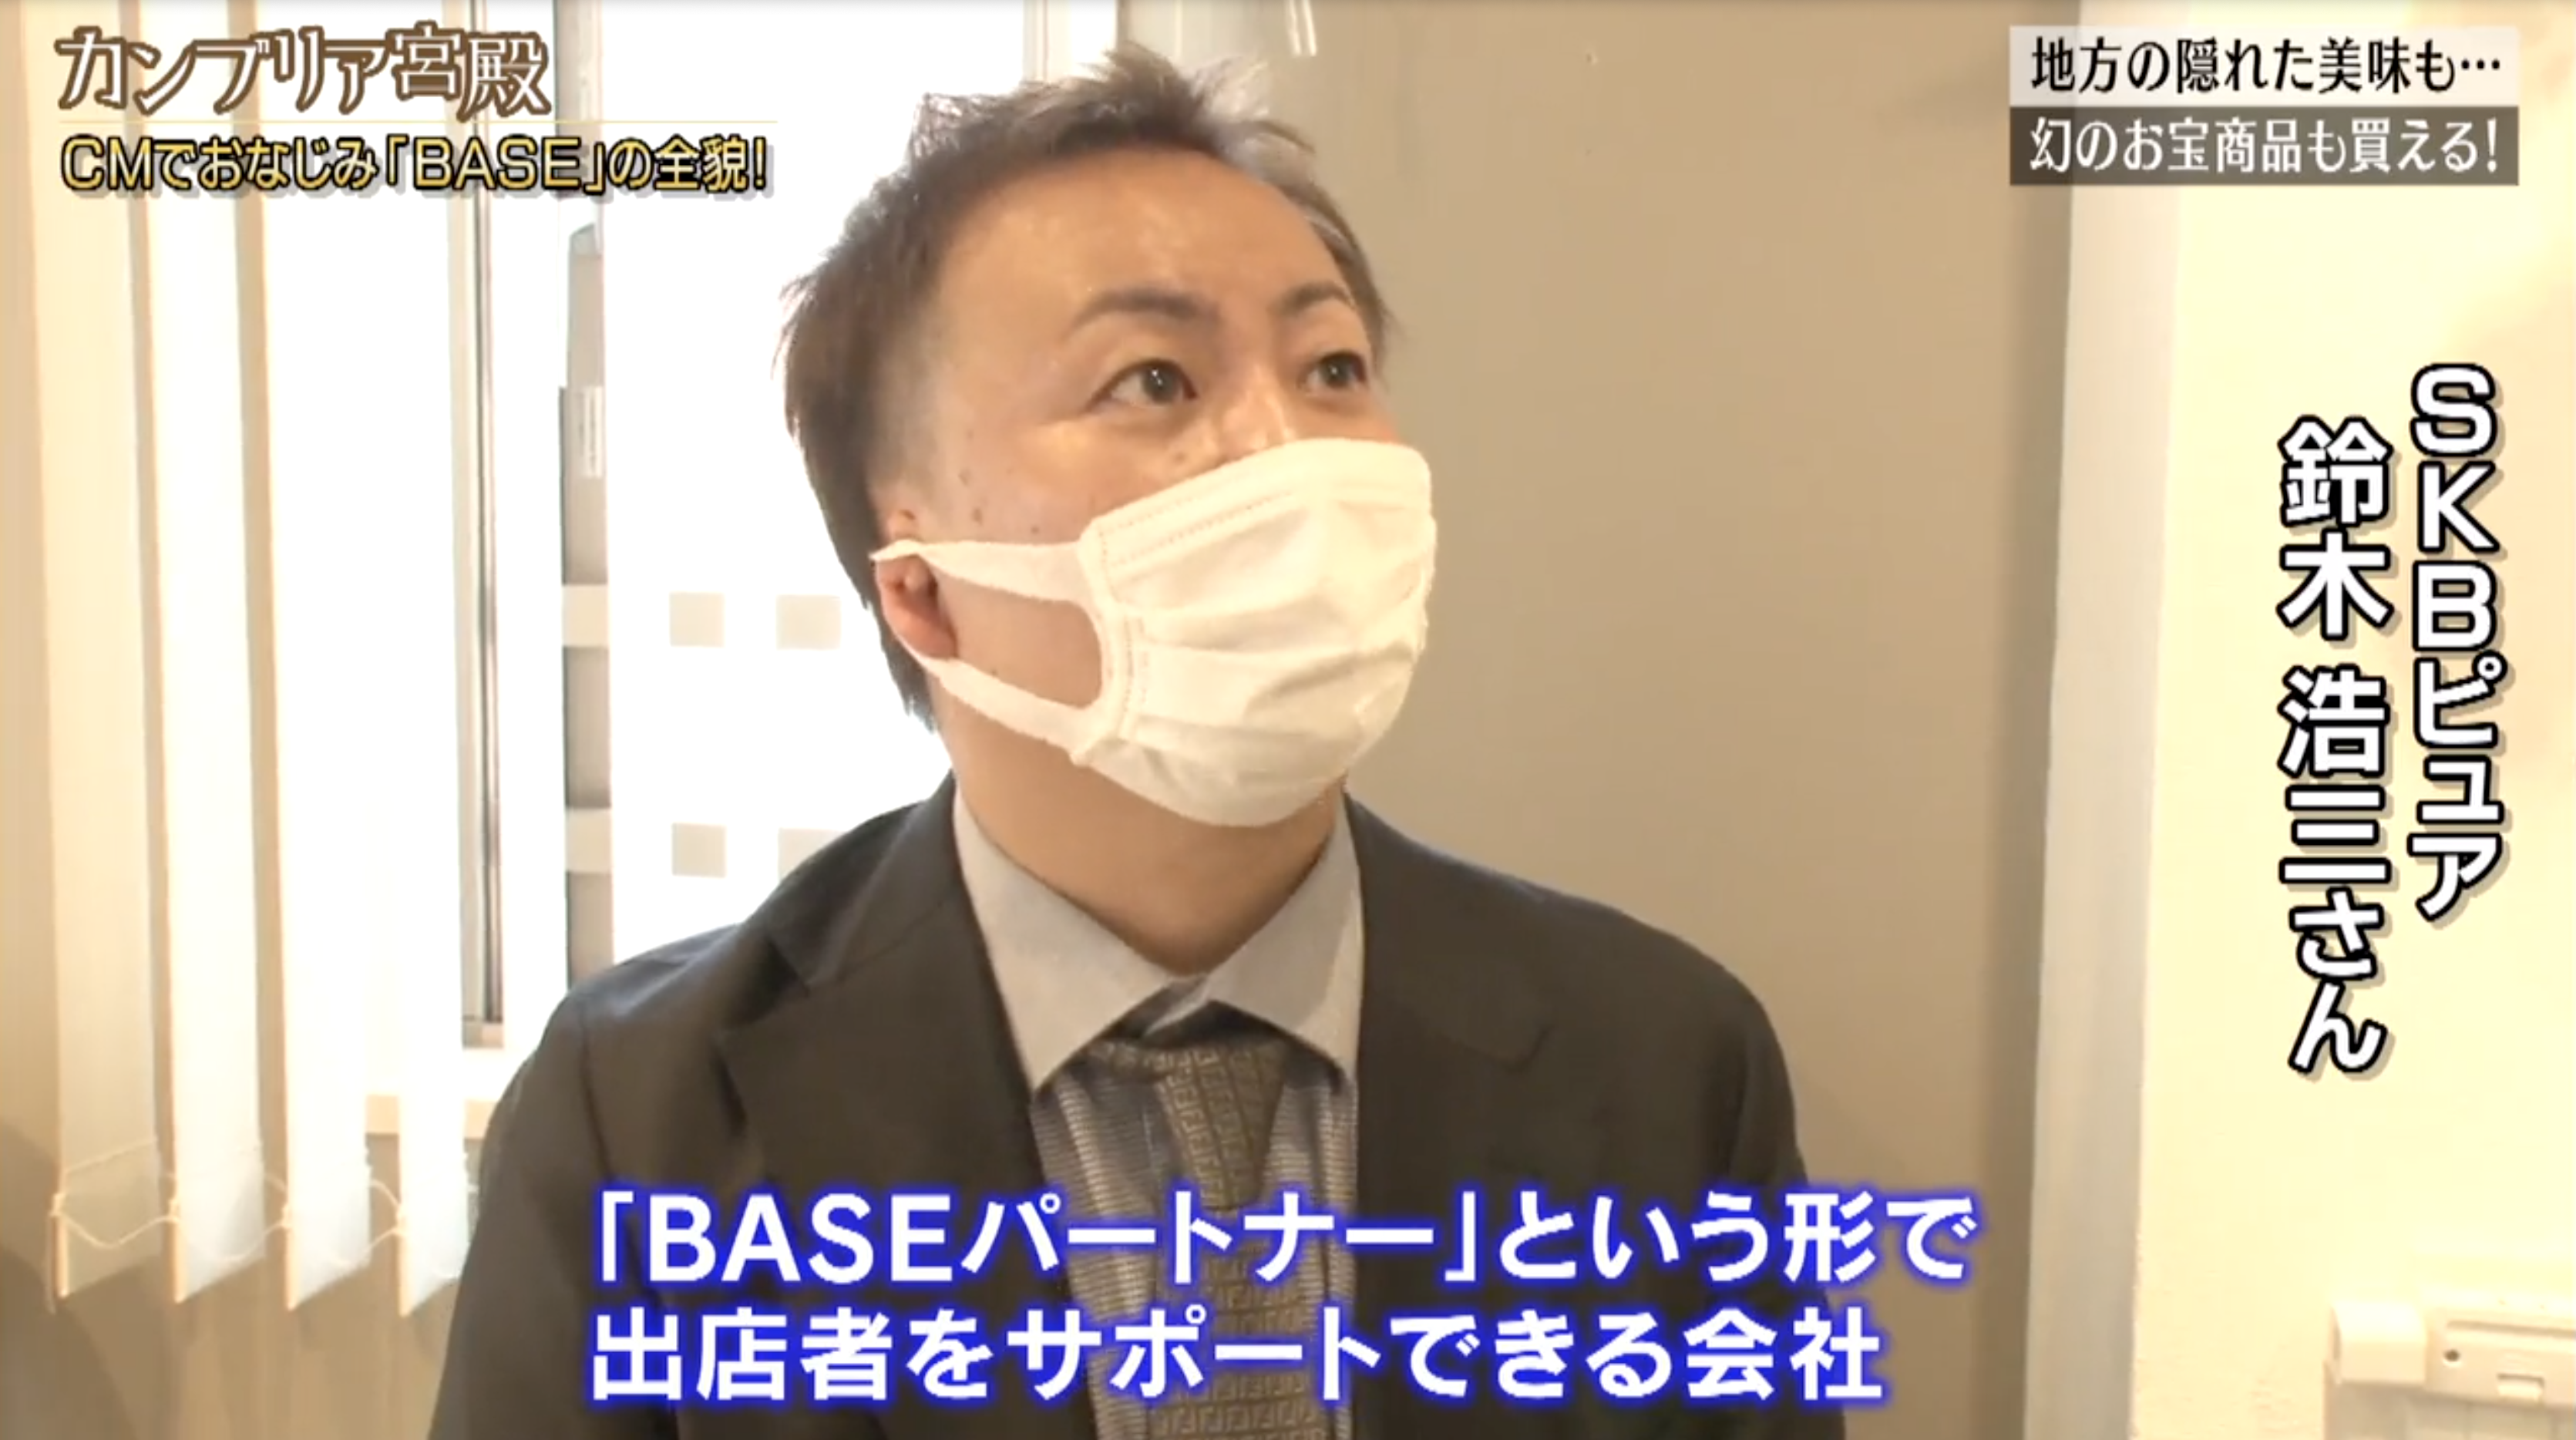 カンブリア宮殿 BASE テレビ東京